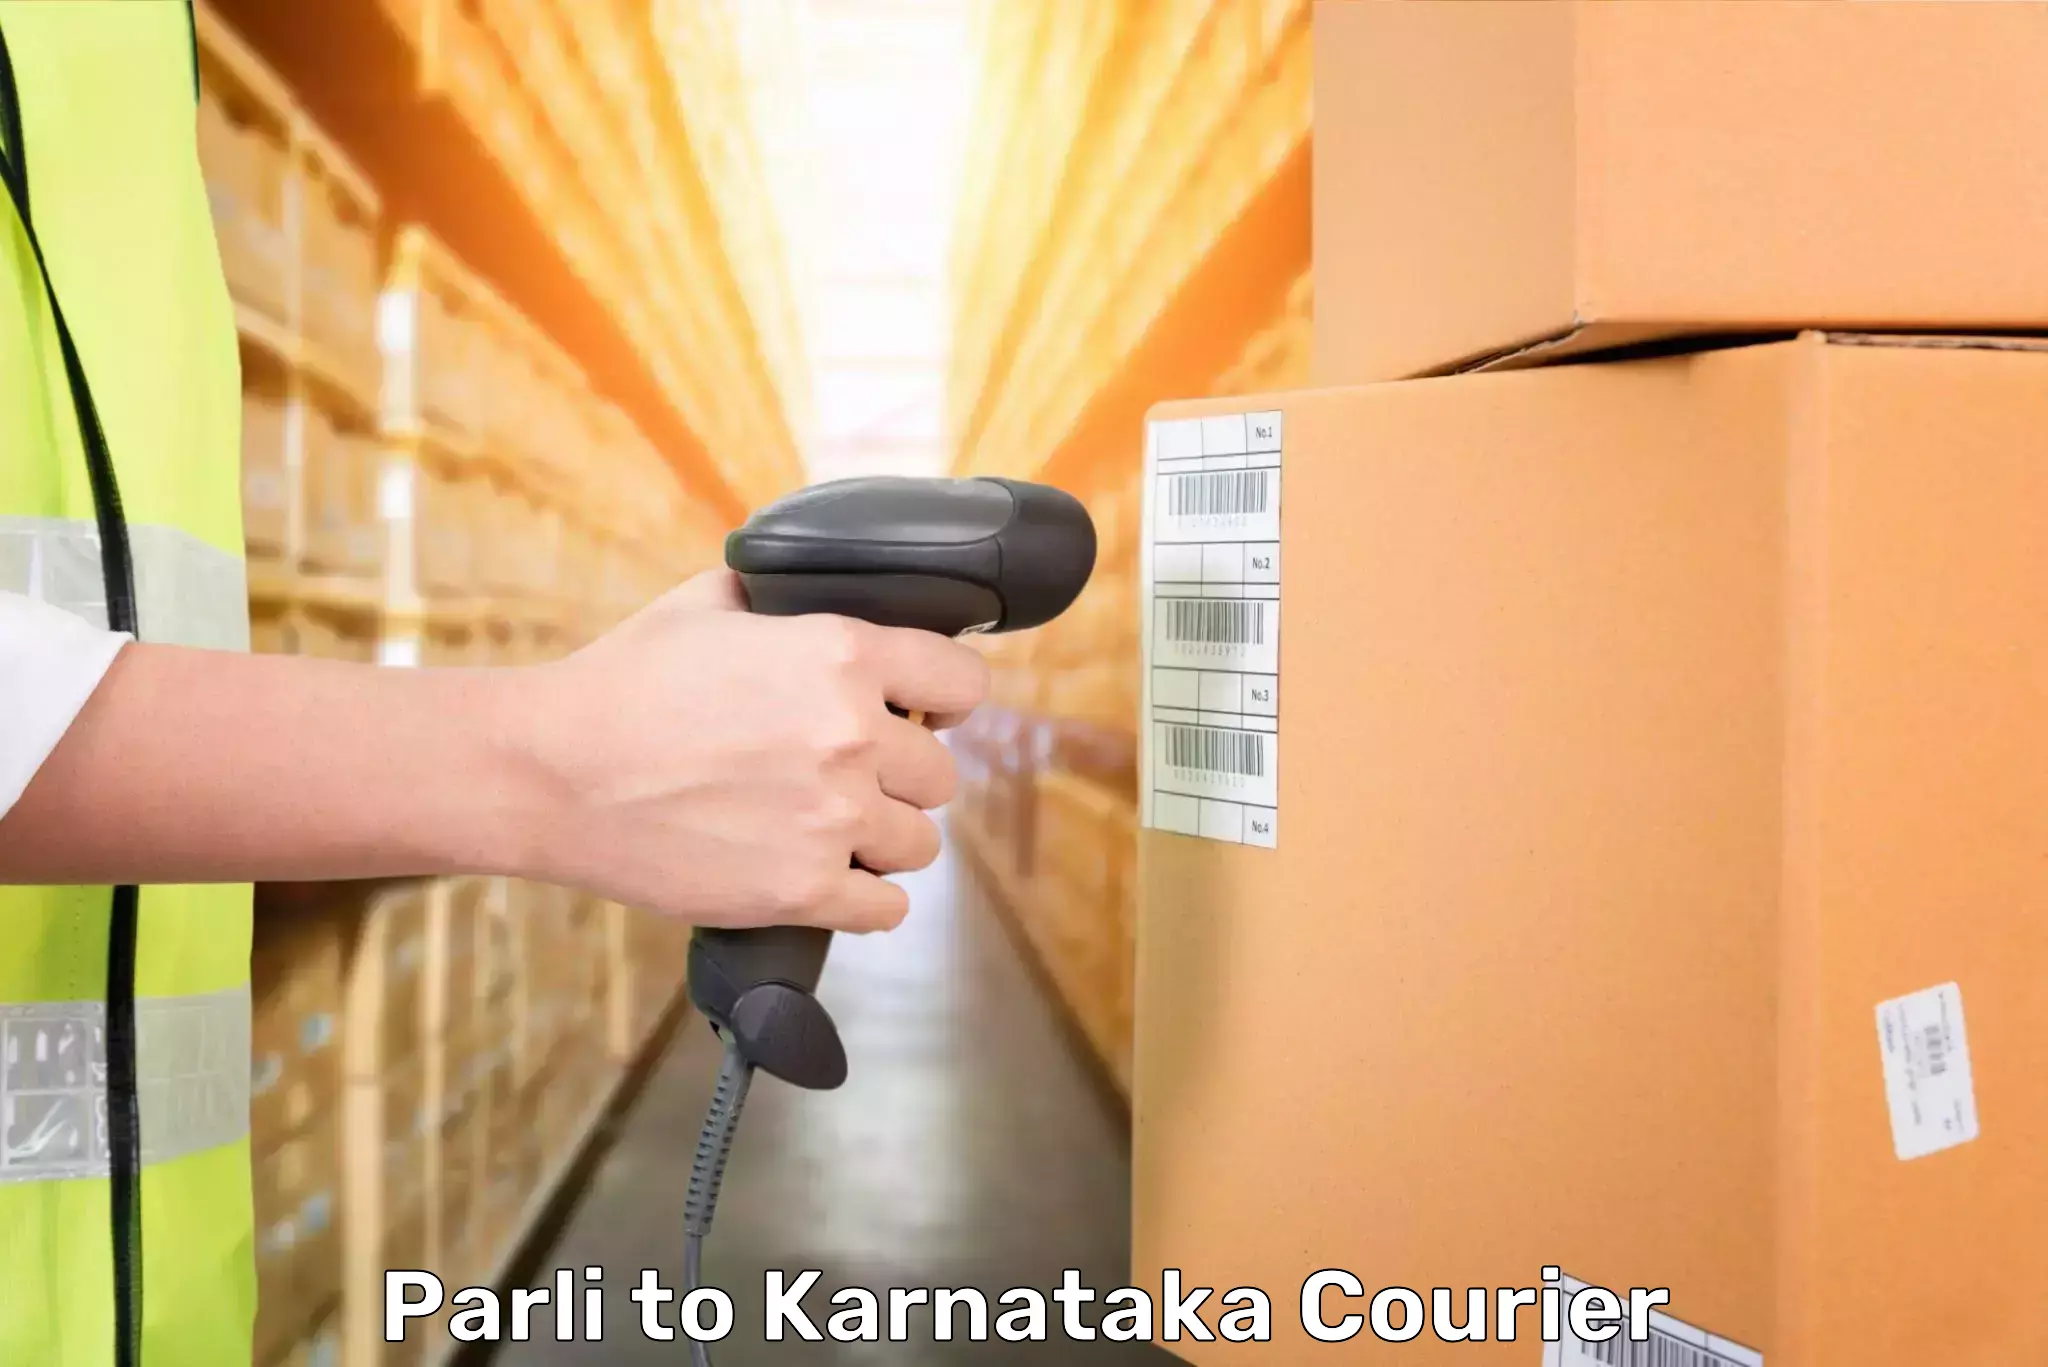 Luggage shipment tracking Parli to Shanivarasanthe